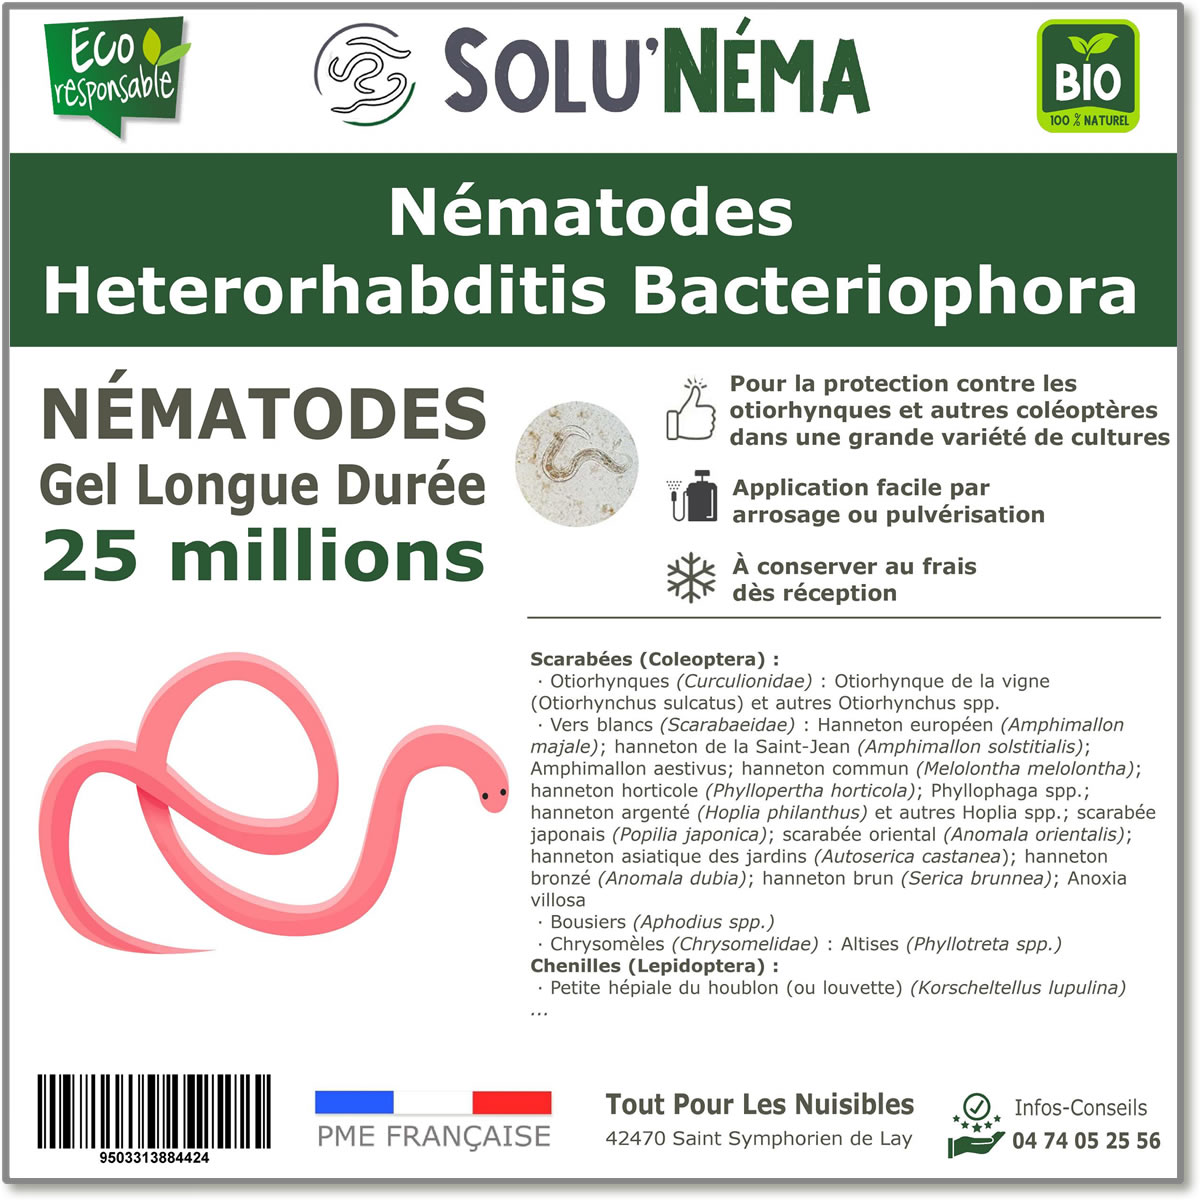 25 Εκατομμύρια νηματώδη βακτηριοφόρα (HB) Heterorhabditis